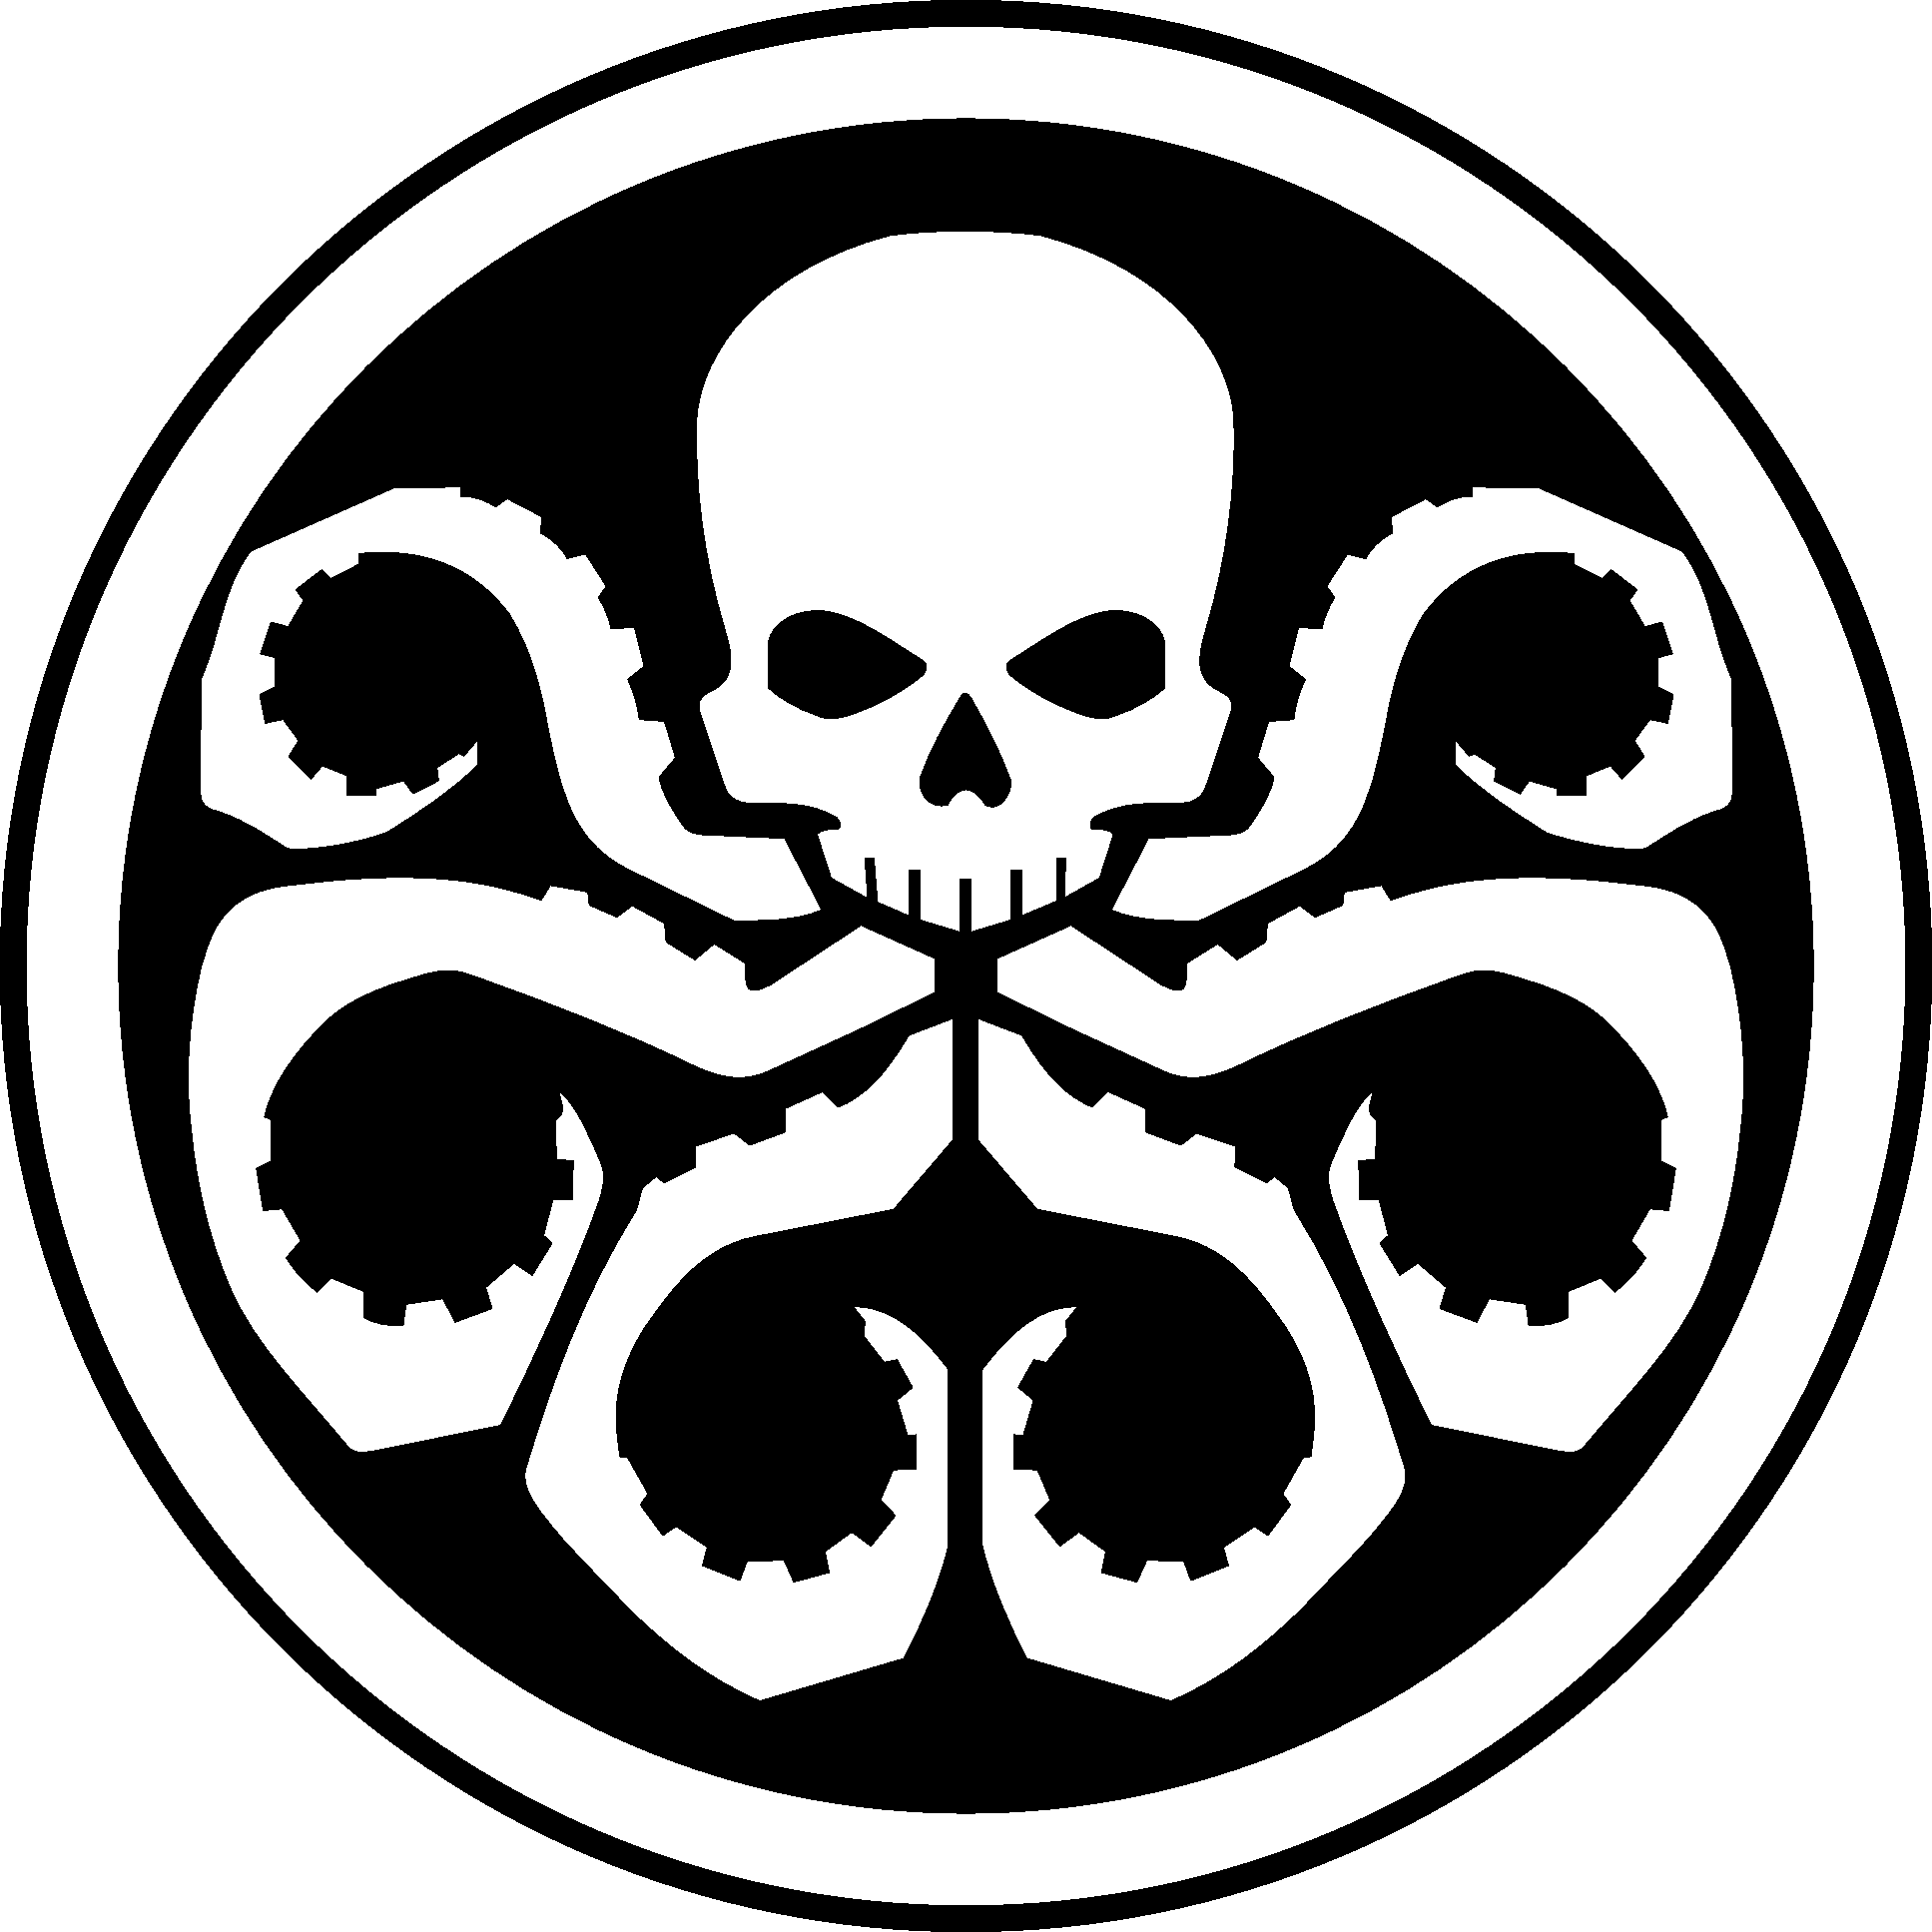 Hydra logo perisai Gambar Transparan